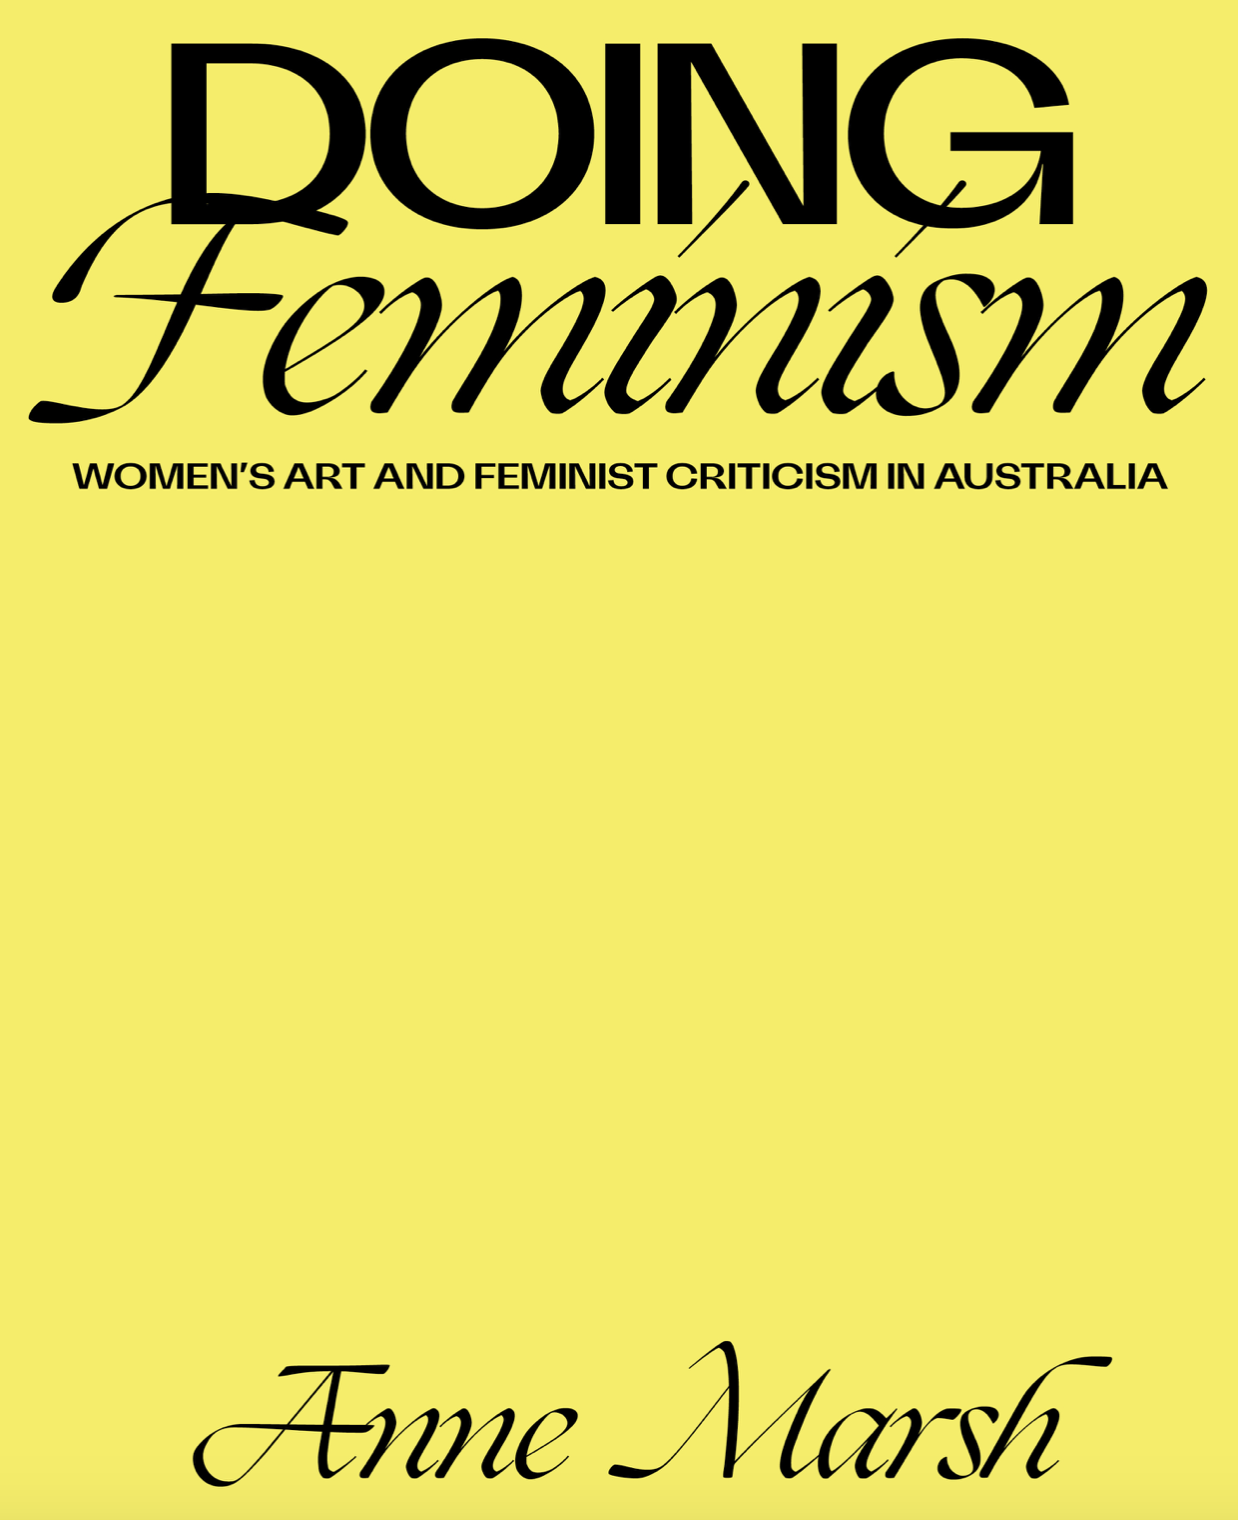 Doing Feminism, Women's Art and Feminist Criticism in Australia, Anne Marsh, Melbourne University Publishing